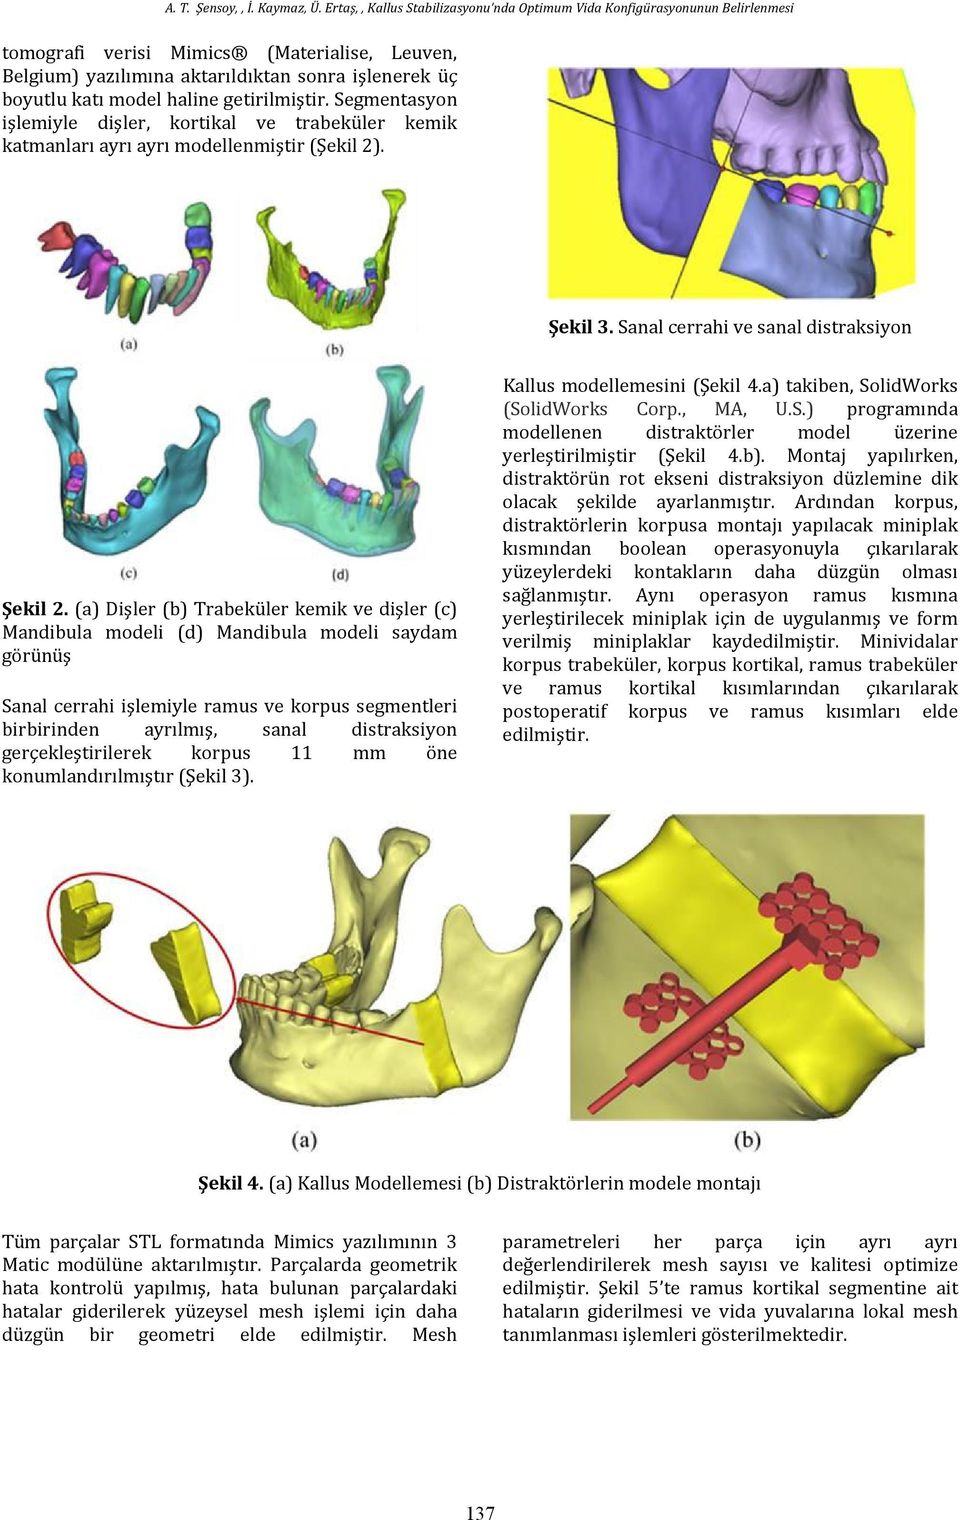 (a) Dişler (b) Trabeküler kemik ve dişler (c) Mandibula modeli (d) Mandibula modeli saydam görünüş Sanal cerrahi işlemiyle ramus ve korpus segmentleri birbirinden ayrılmış, sanal distraksiyon